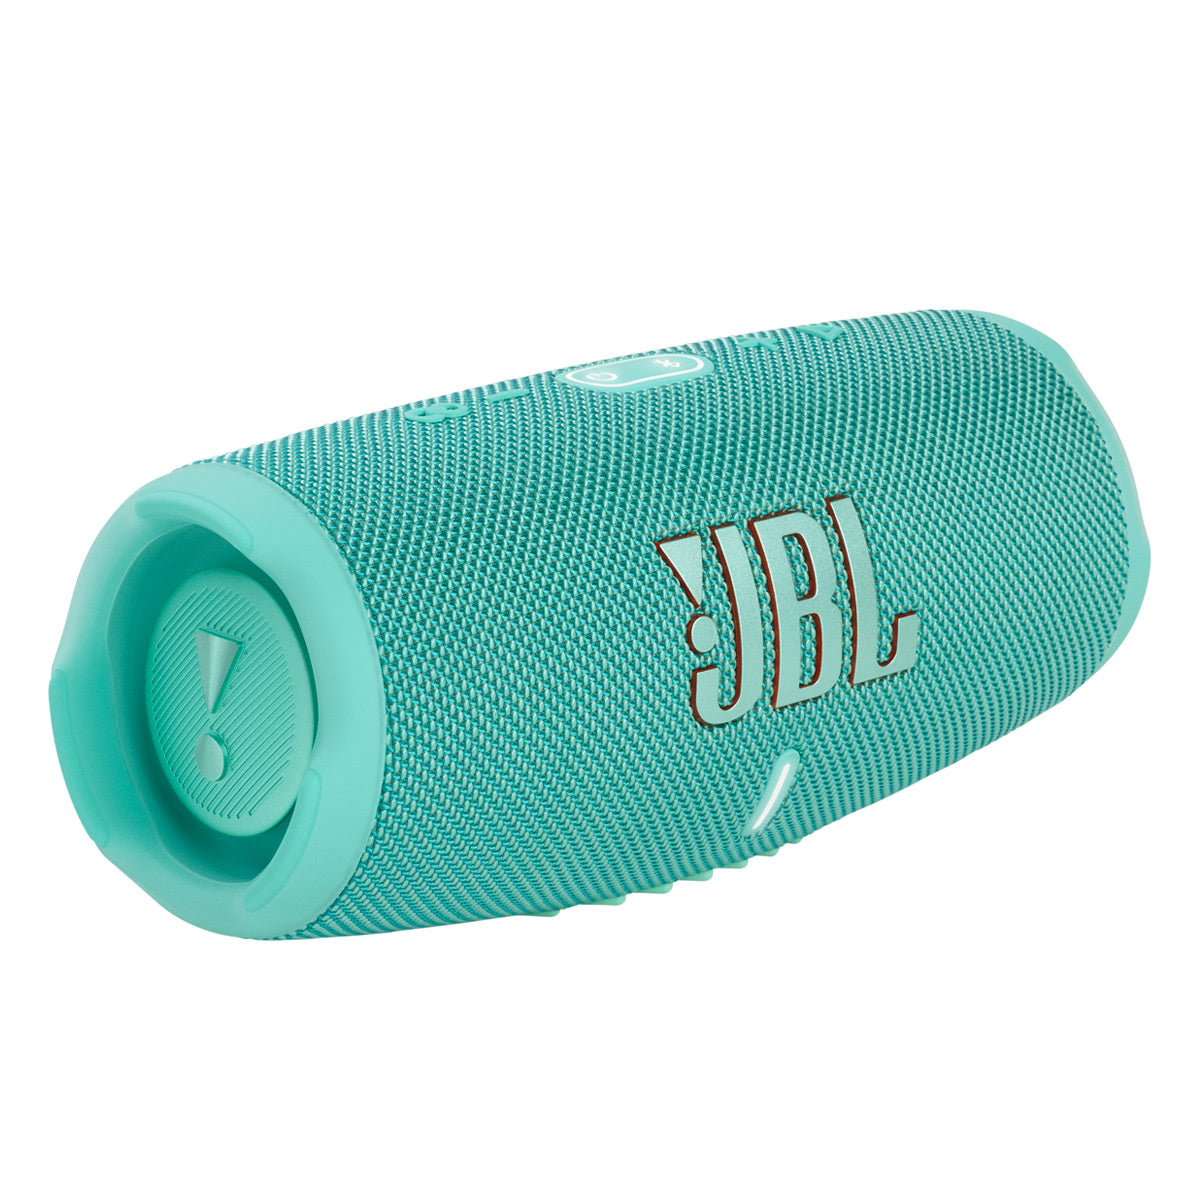 JBL Charge 5 Portable Waterproof Bluetooth Speaker with Powerbank (Teal)